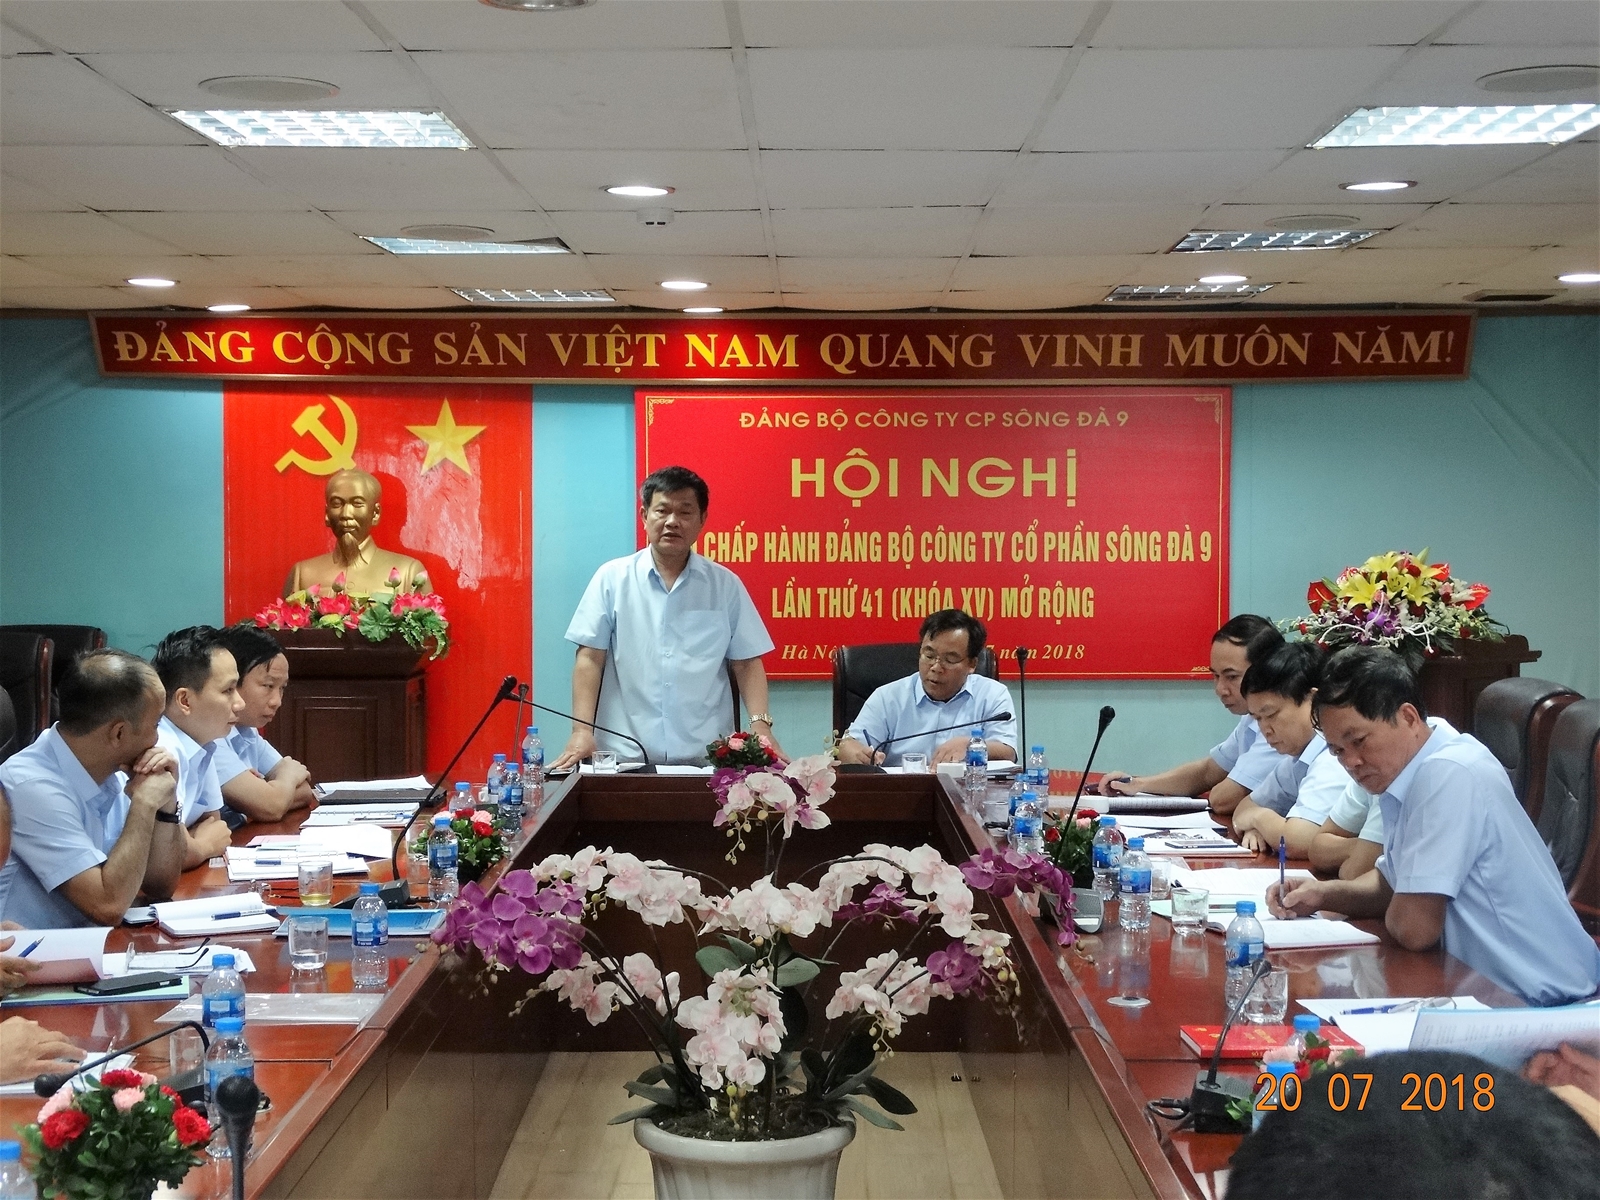 Đảng bộ Sông Đà 9 sơ kết công tác 6 tháng đầu năm, triển khai nhiệm vụ 6 tháng cuối năm và kiểm điểm giữa nhiệm kỳ 2015-2020